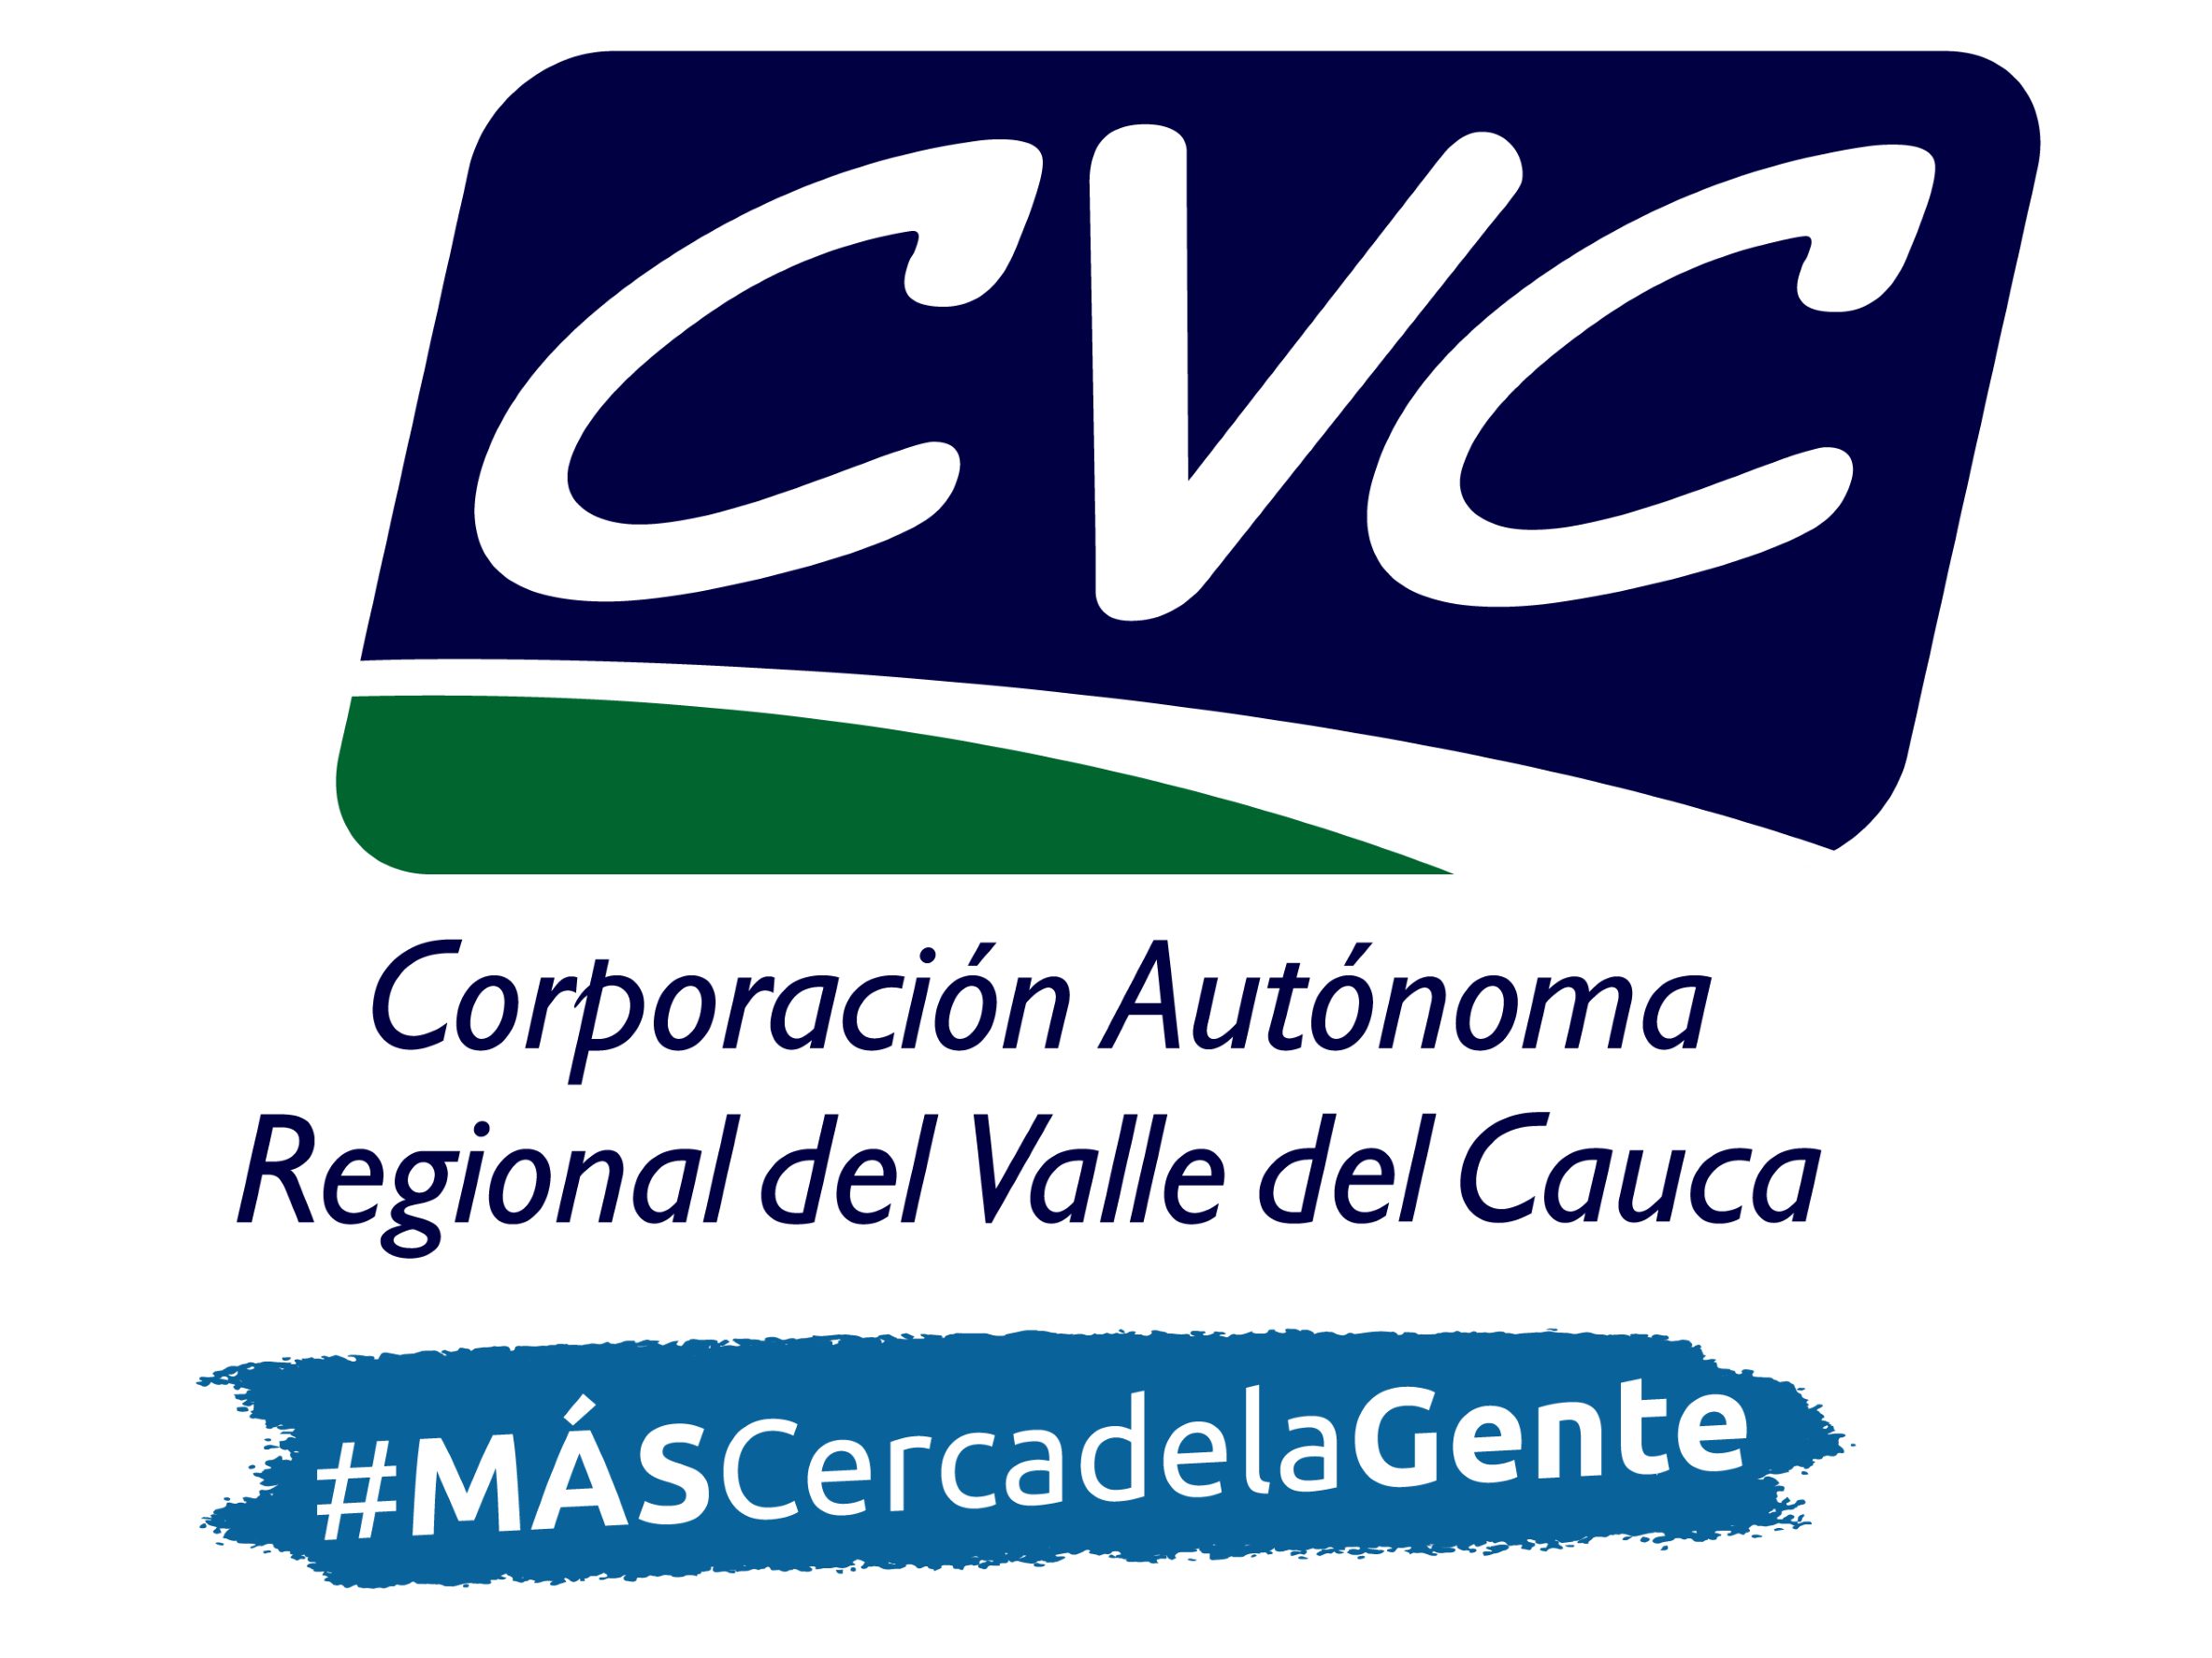 Corporación Autónoma Regional del Valle del Cauca